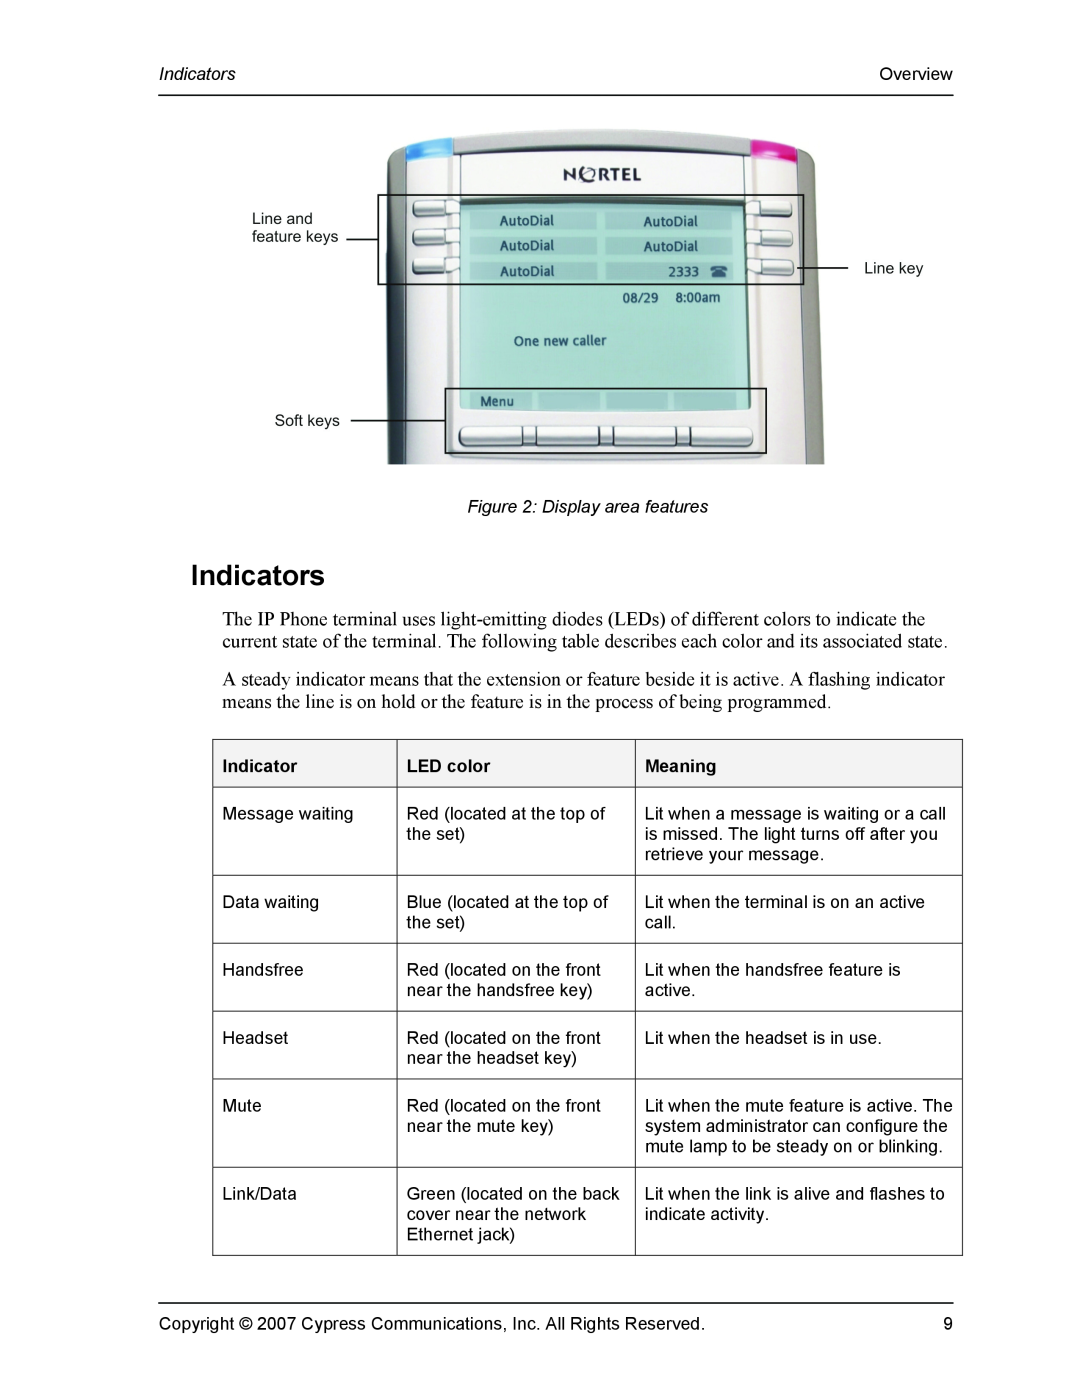 DeWalt 1140 manual Indicators, LED color, Meaning 